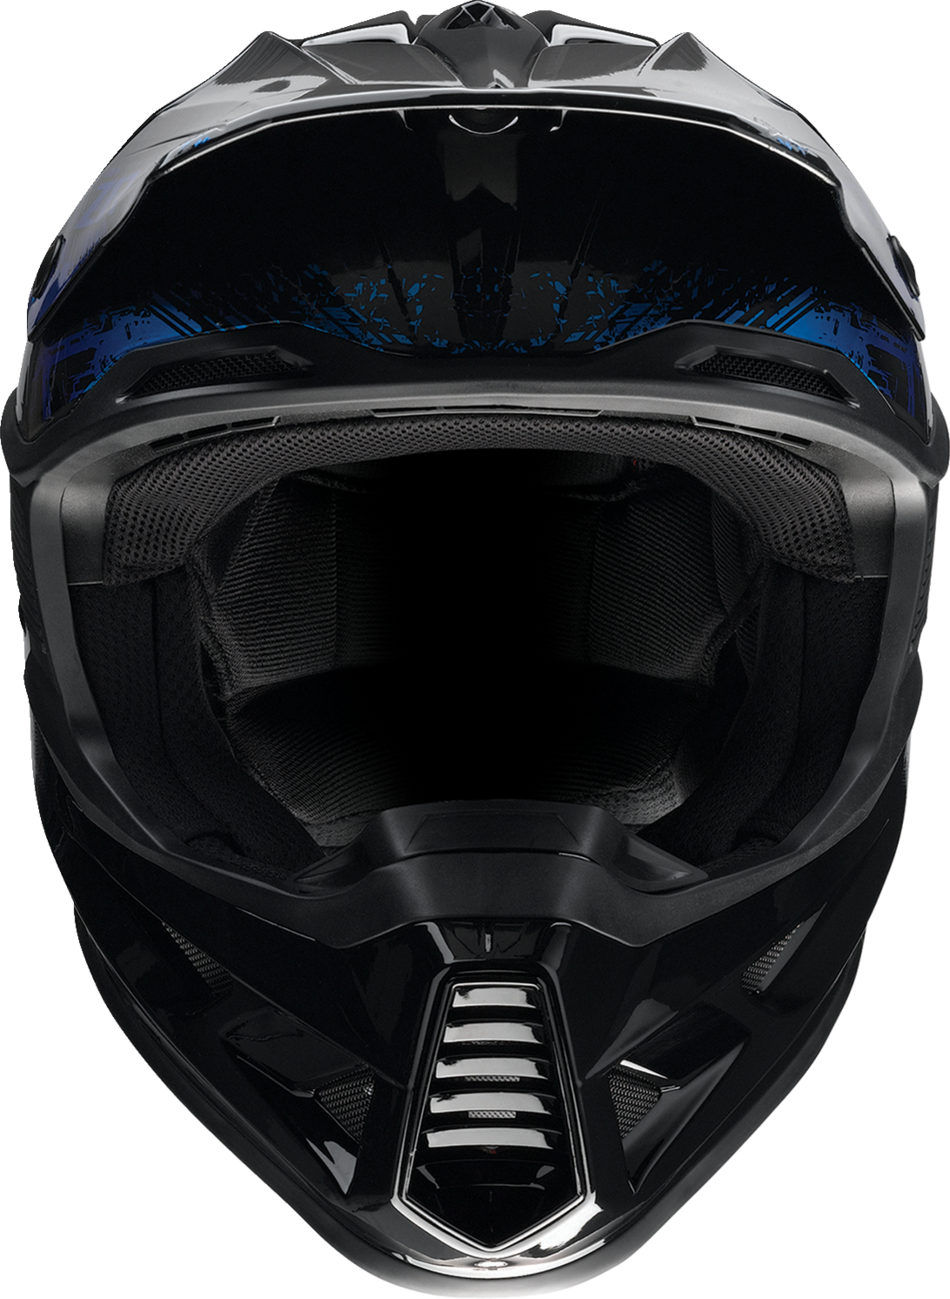 Z1R F.I. Helmet - Fractal - MIPS - Blue - Medium 0110-7789